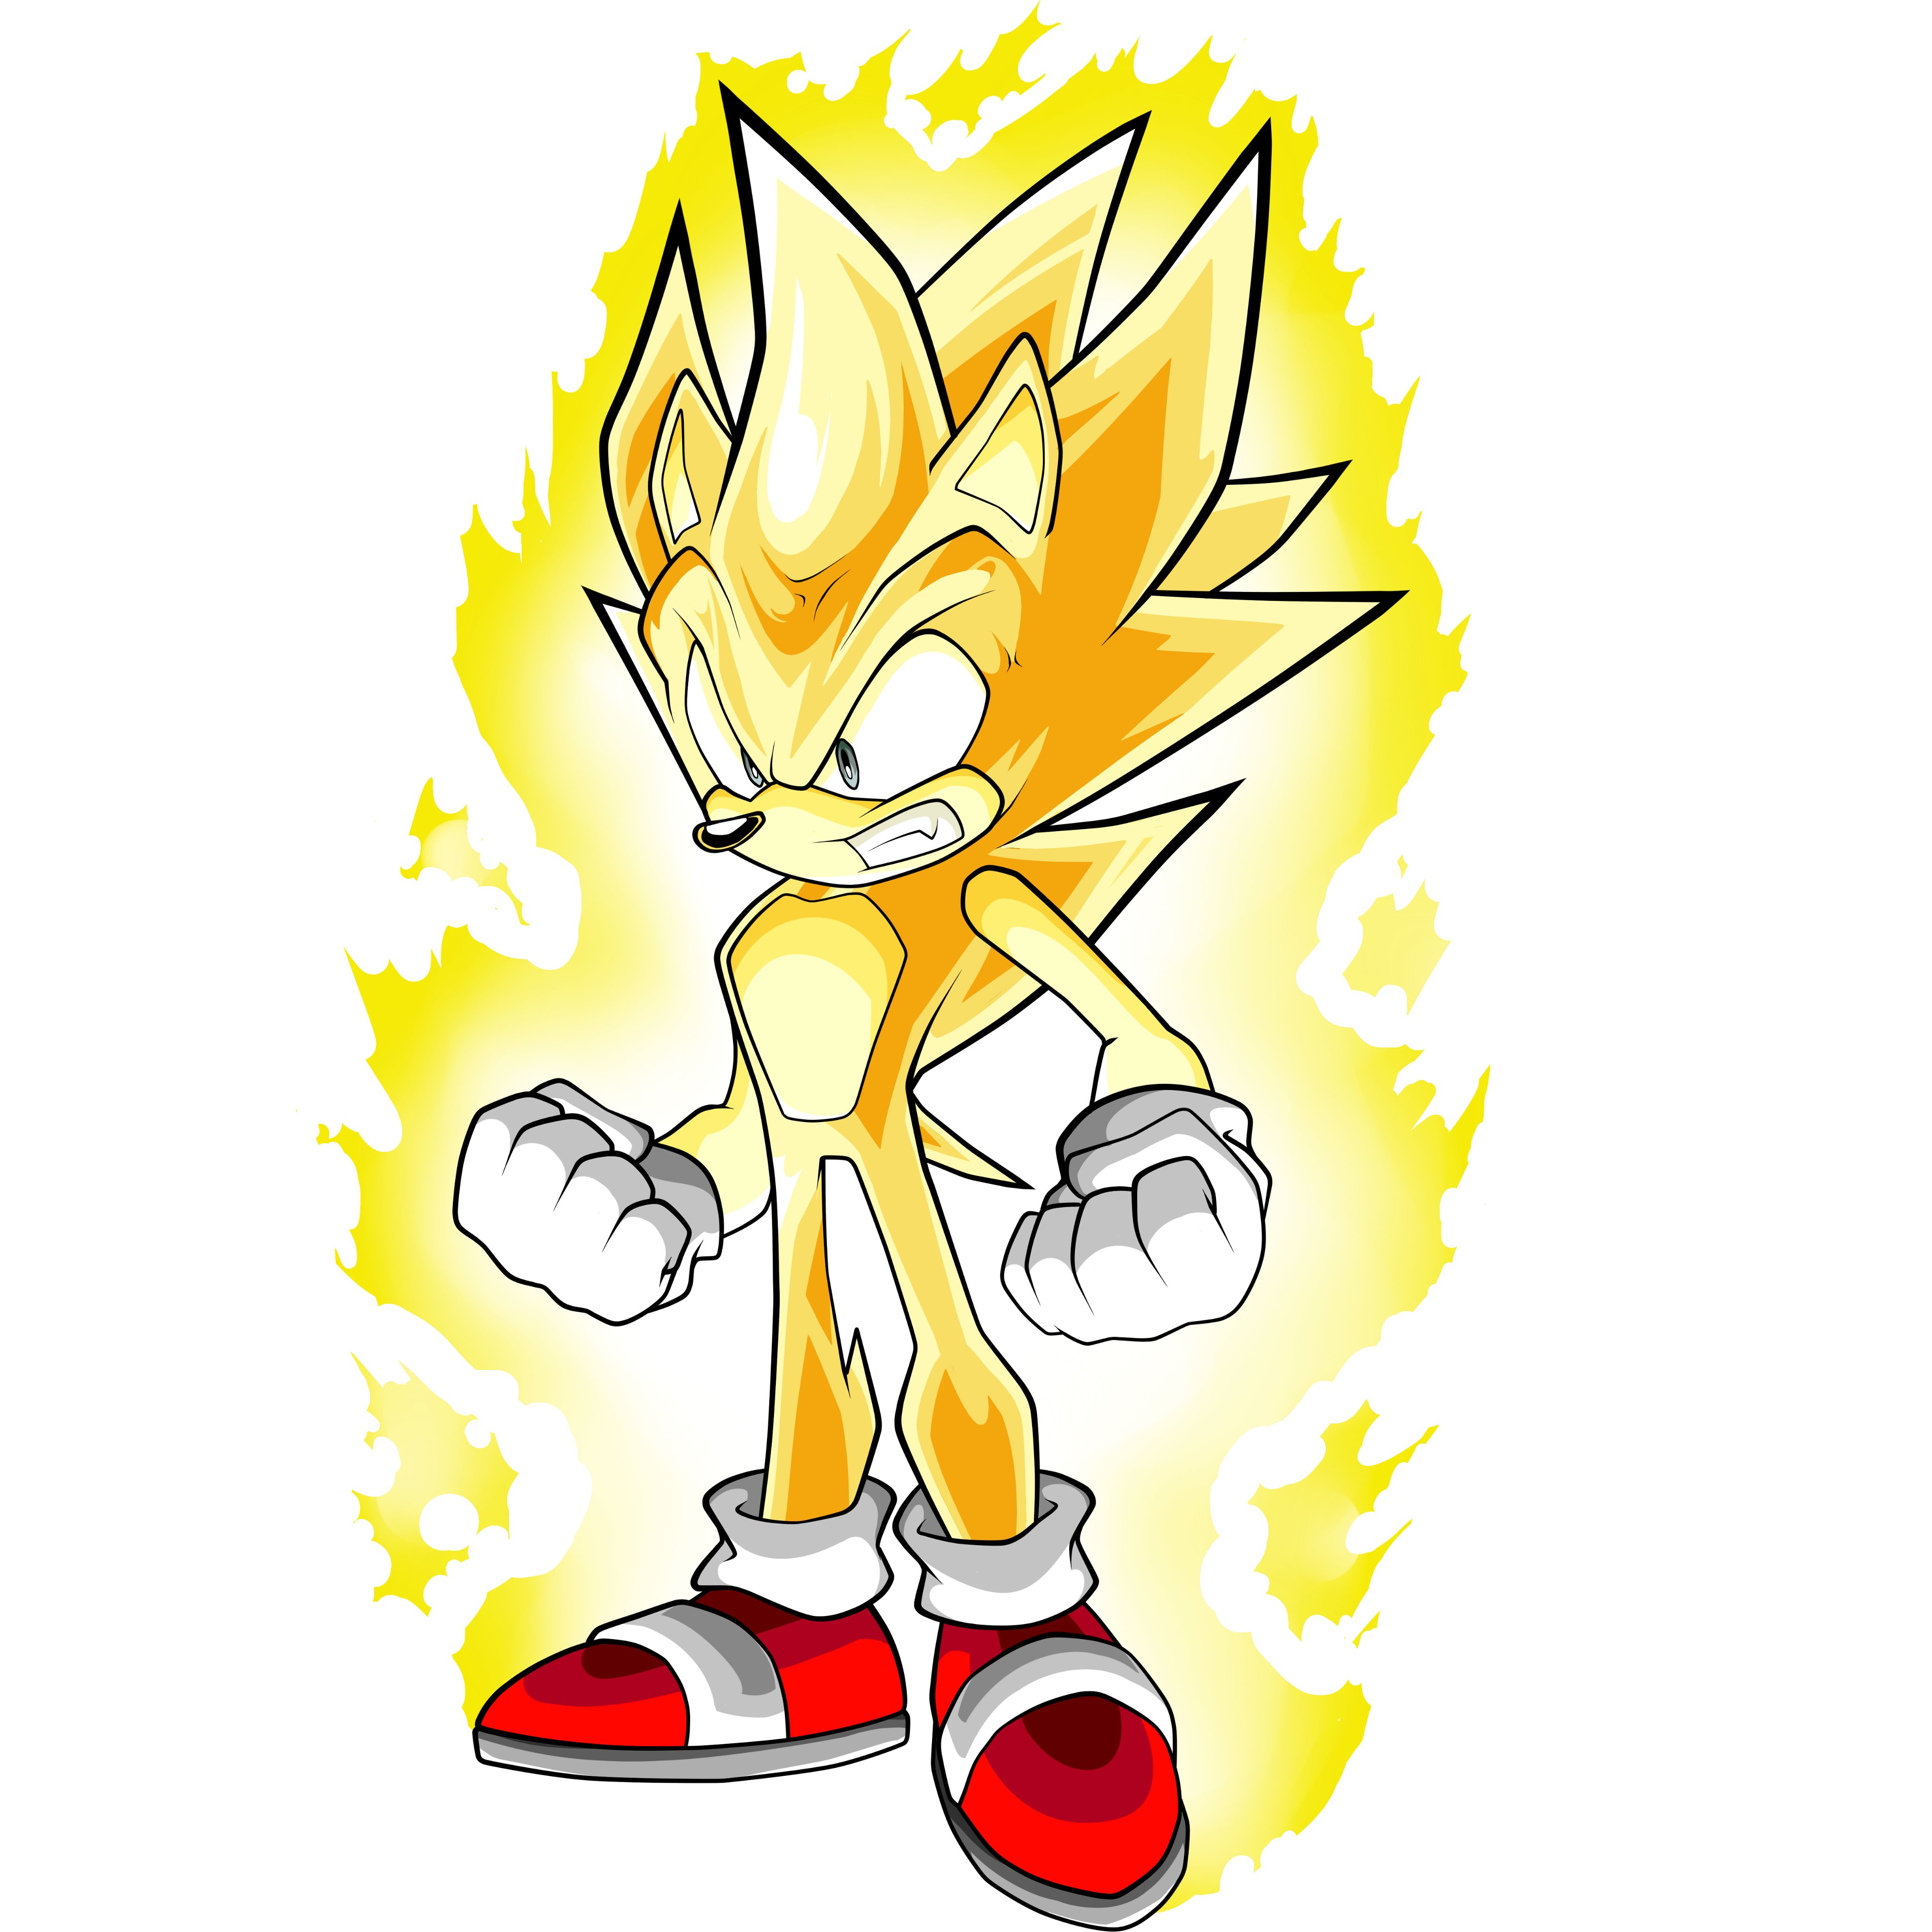 SARKEN(El hombre) // COMMS CLOSED// on X: What If Fleetway Super Sonic  had a Legendary Super form? #sonic #SonicTheHedgehog #fleetway #Sonic  #supersonic  / X